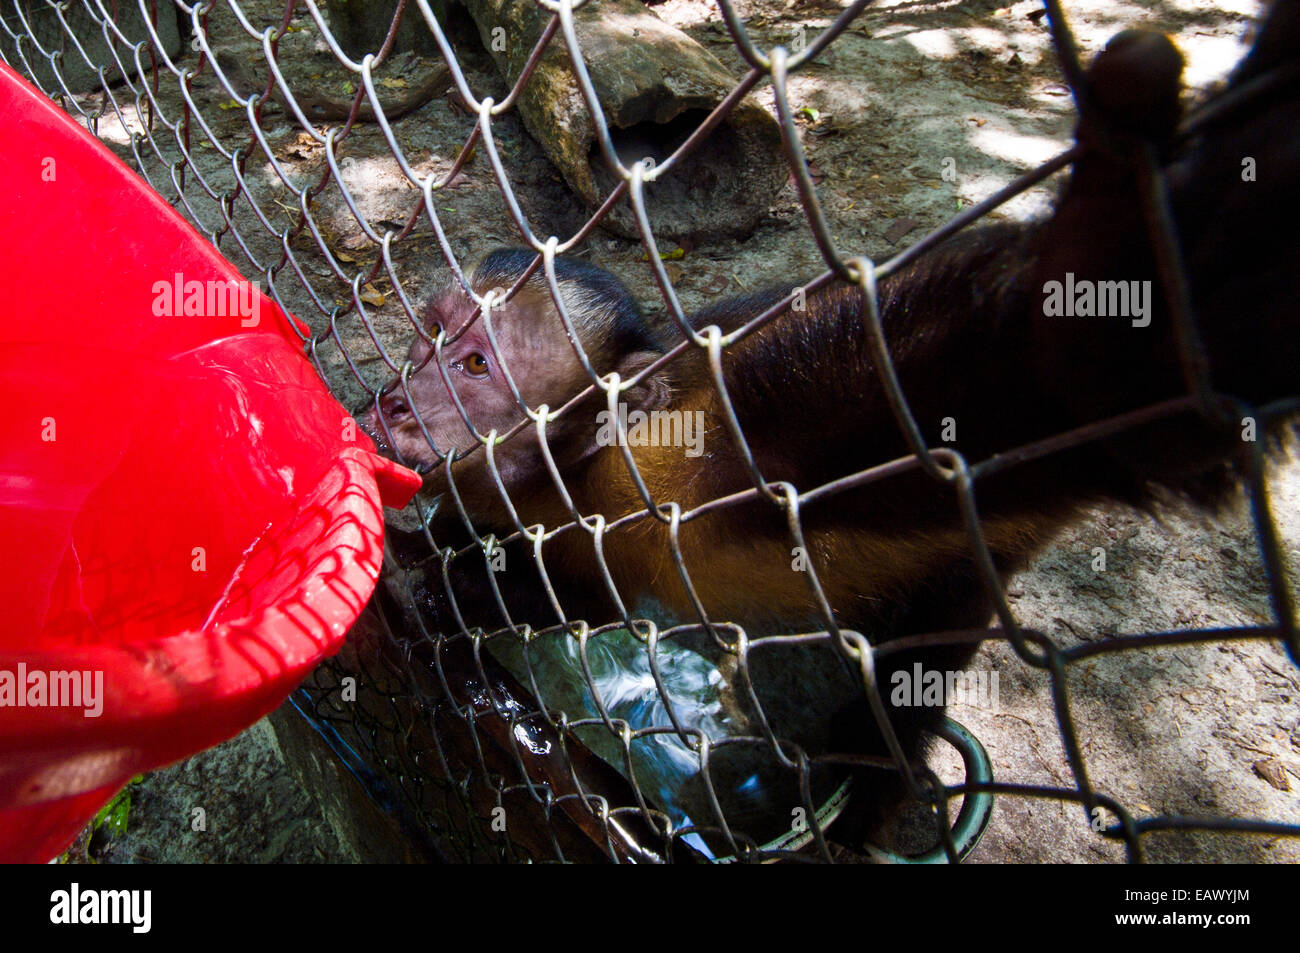 Un capucin brun en cage à partir d'un seau d'eau potable après avoir été sauvé de braconniers. Banque D'Images